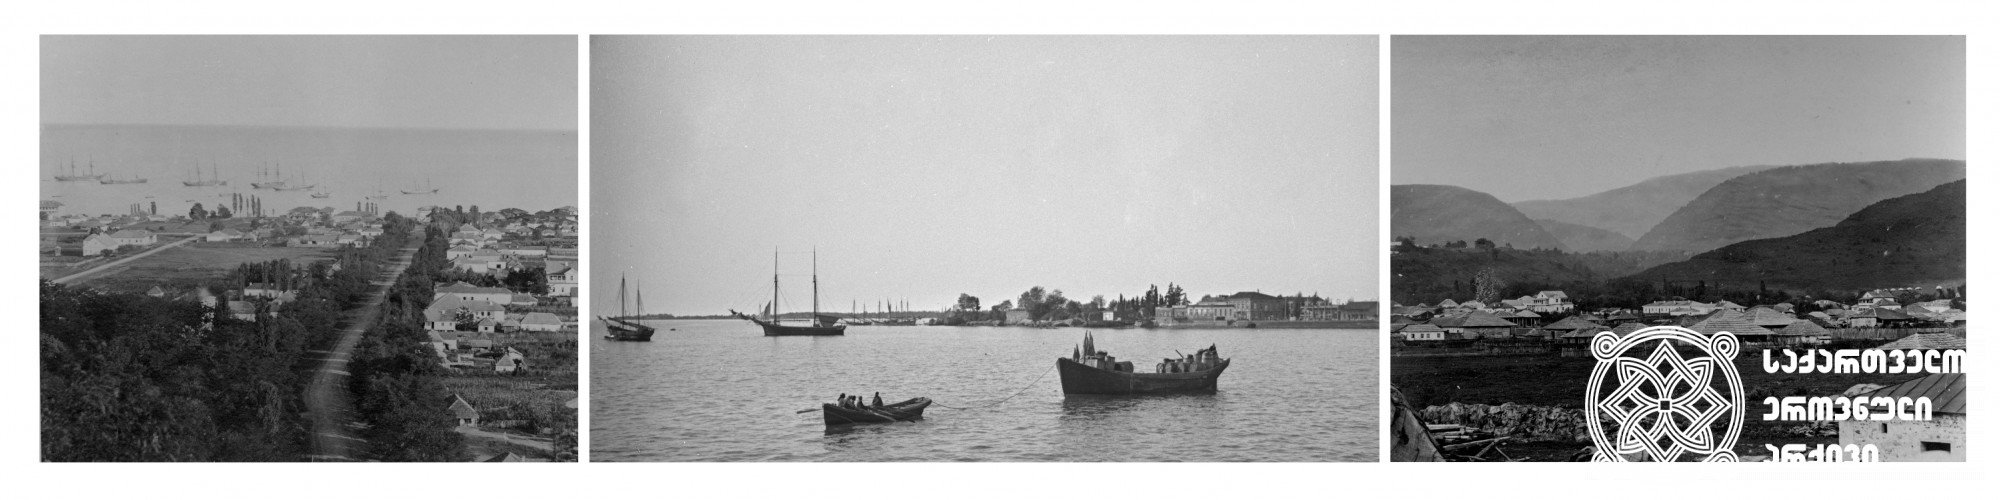 მარცხნივ: სოხუმის ხედი ზღვიდან; შუაში: სოხუმის ხედი ზღვიდან <br>
მარჯვნივ: სოხუმის ხედი ციხის ნანგრევებიდან <br>
(1880-1900) <br>დიმიტრი ერმაკოვის ფოტოკოლექცია <br>
On the left: A view of Sokhumi from the sea <br>
in the middle: A view of Sokhumi from the sea <br>
on the right: A view of Sokhumi from the castle ruins <br>
(1880-1900) <br>Dimitri Ermakov's photo collection